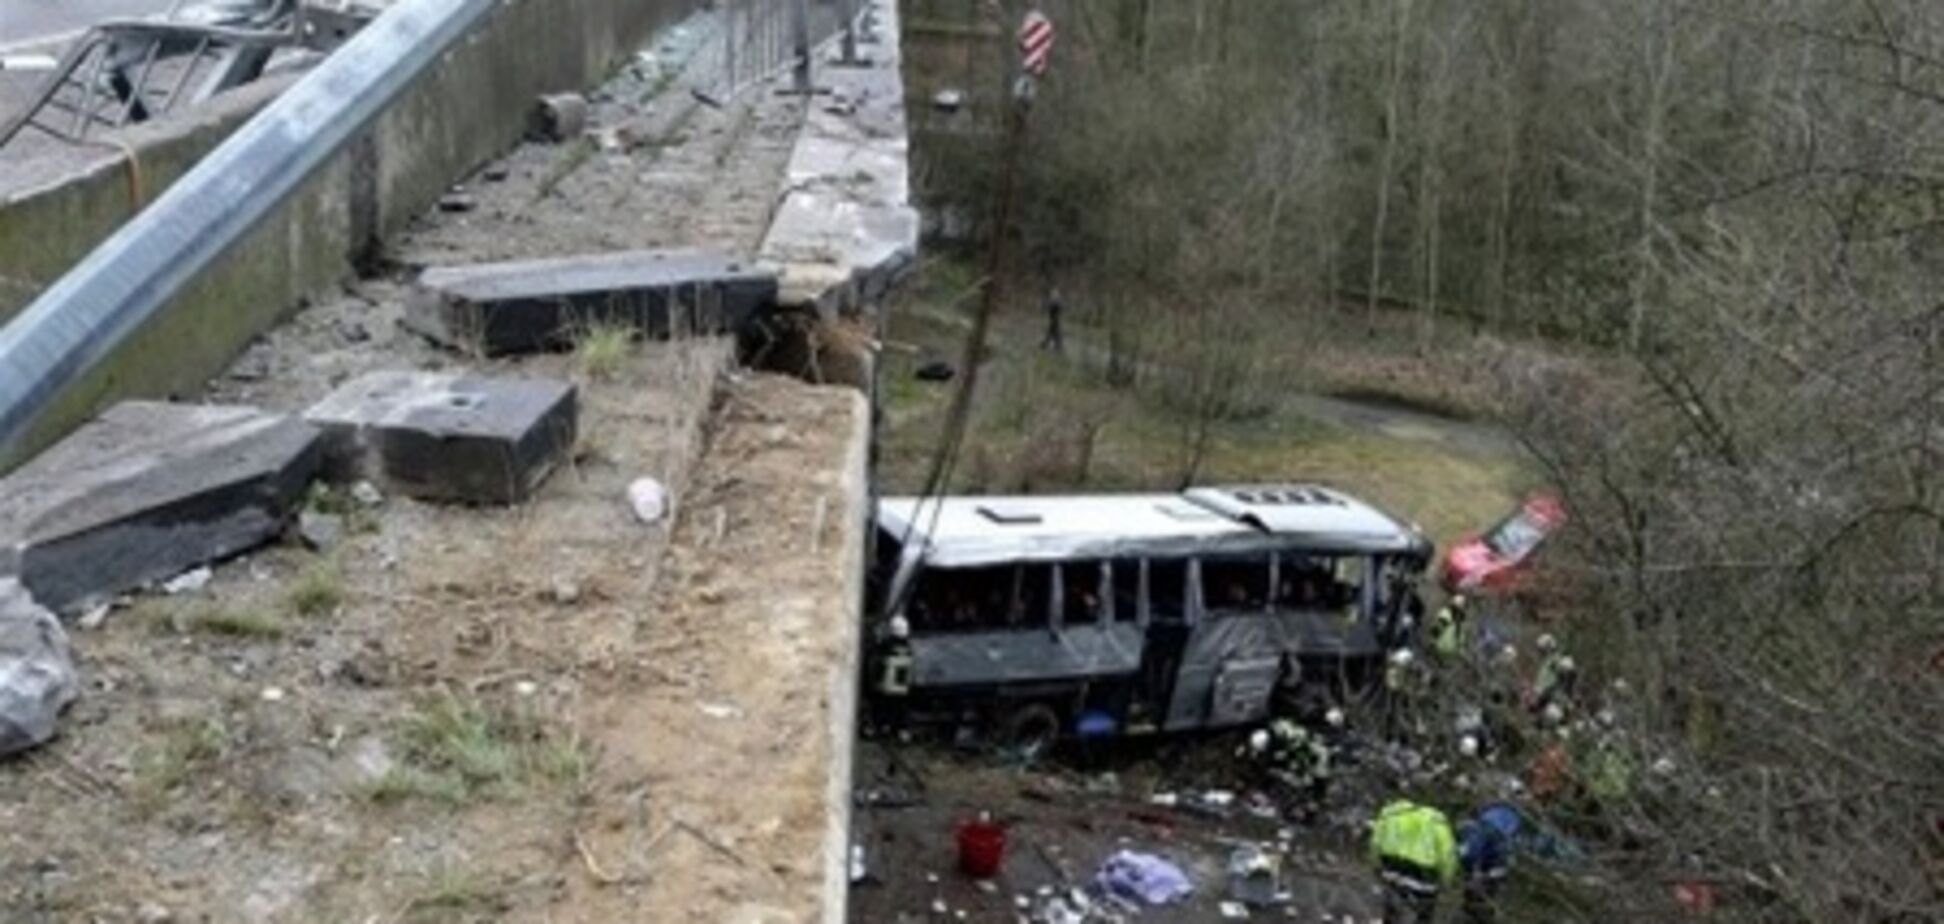 Полиция Бельгии пока не подтверждает, что в разбившемся автобусе были украинцы